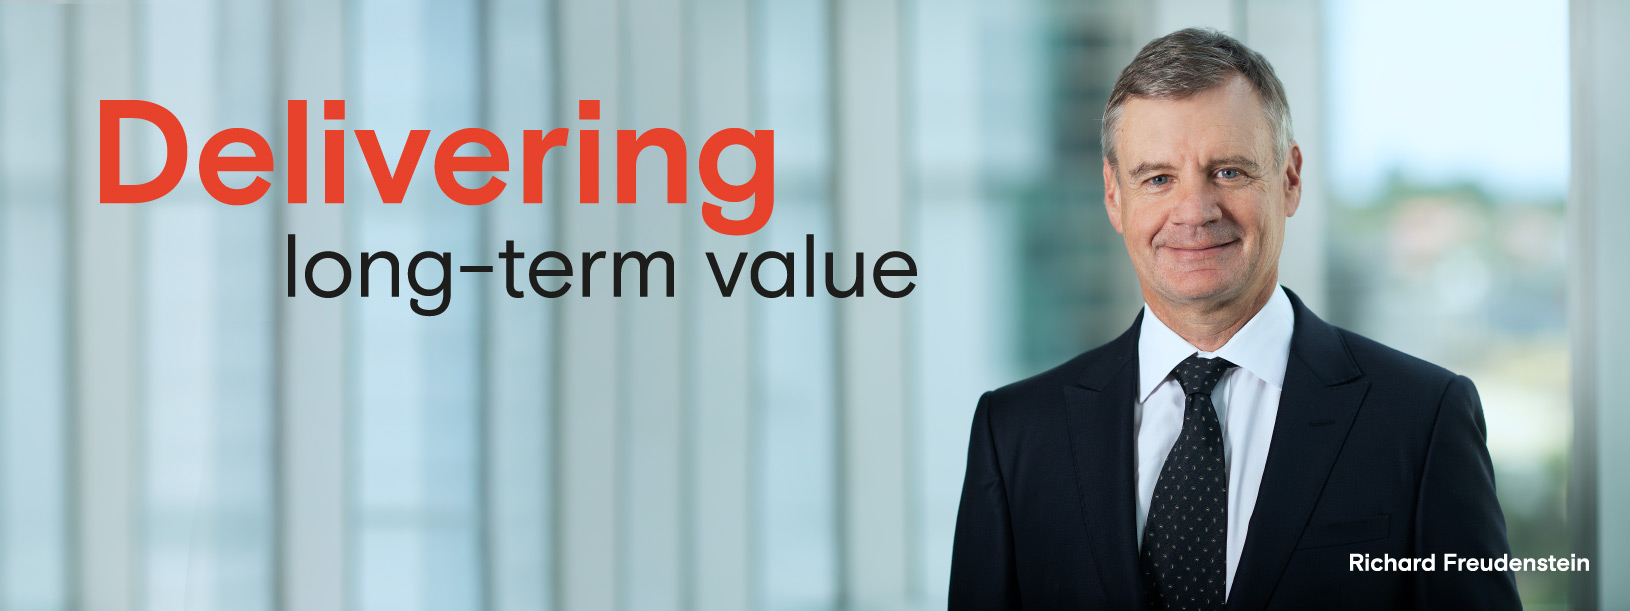 Delivering long-term value - Richard Freudenstein